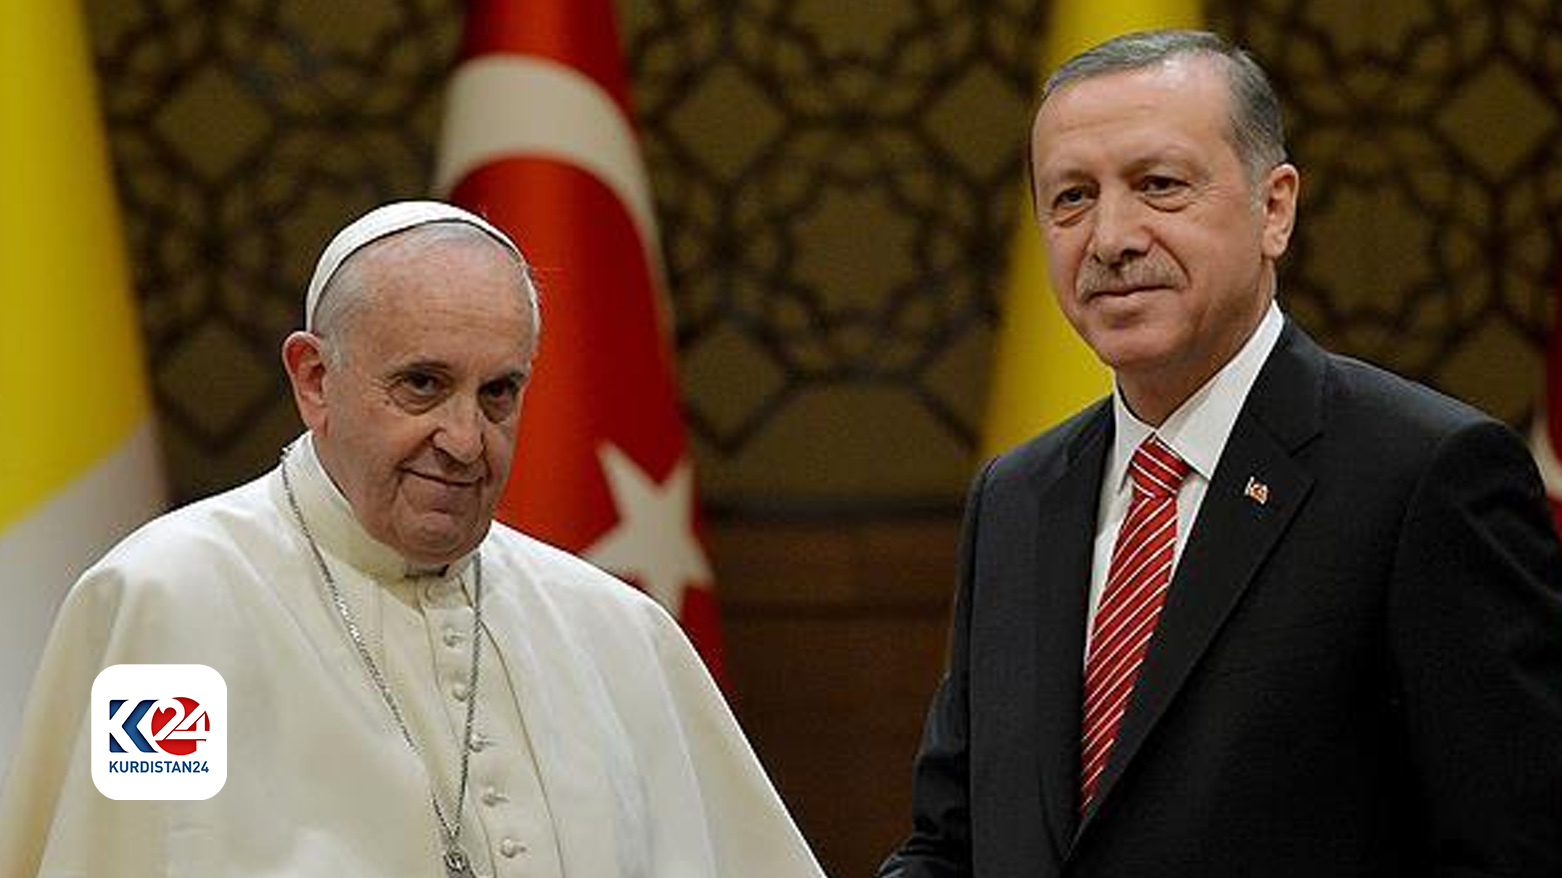 الرئيس التركي أردوغان وبابا الفاتيكان فرنسيس / أرشيف